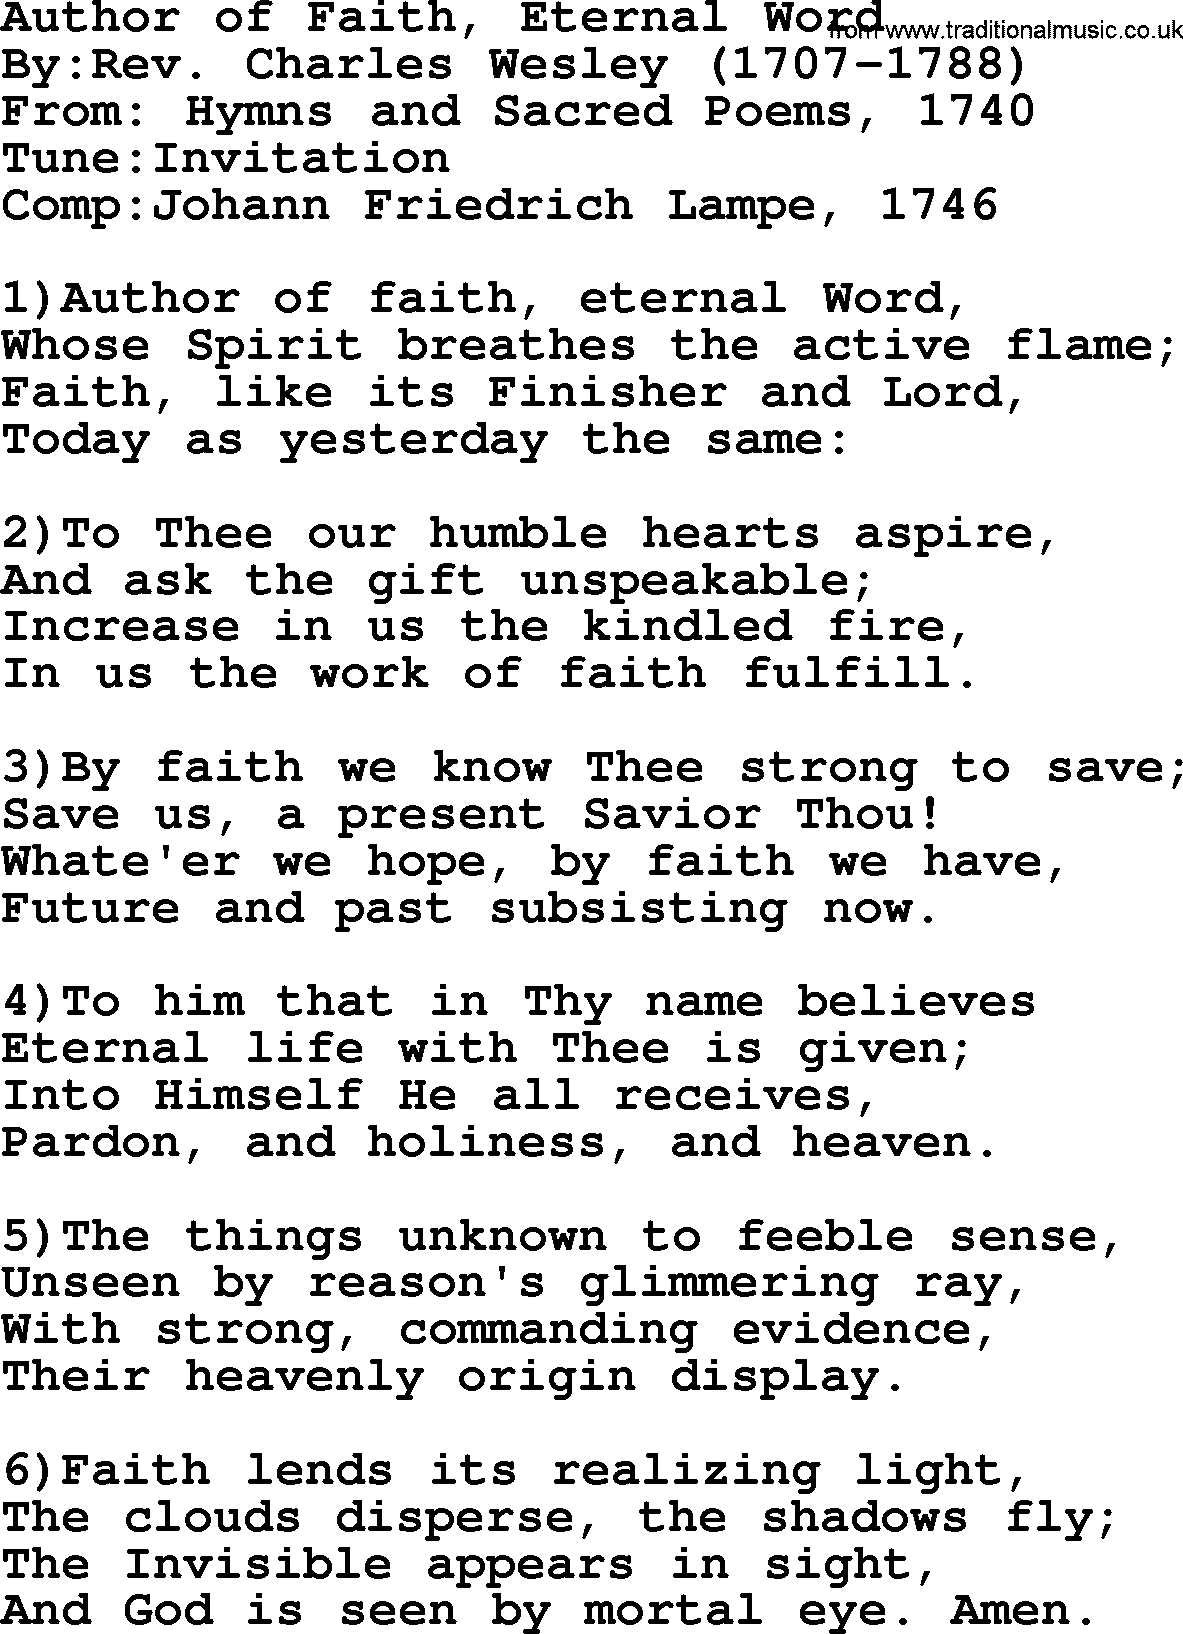 Methodist Hymn: Author Of Faith, Eternal Word, lyrics